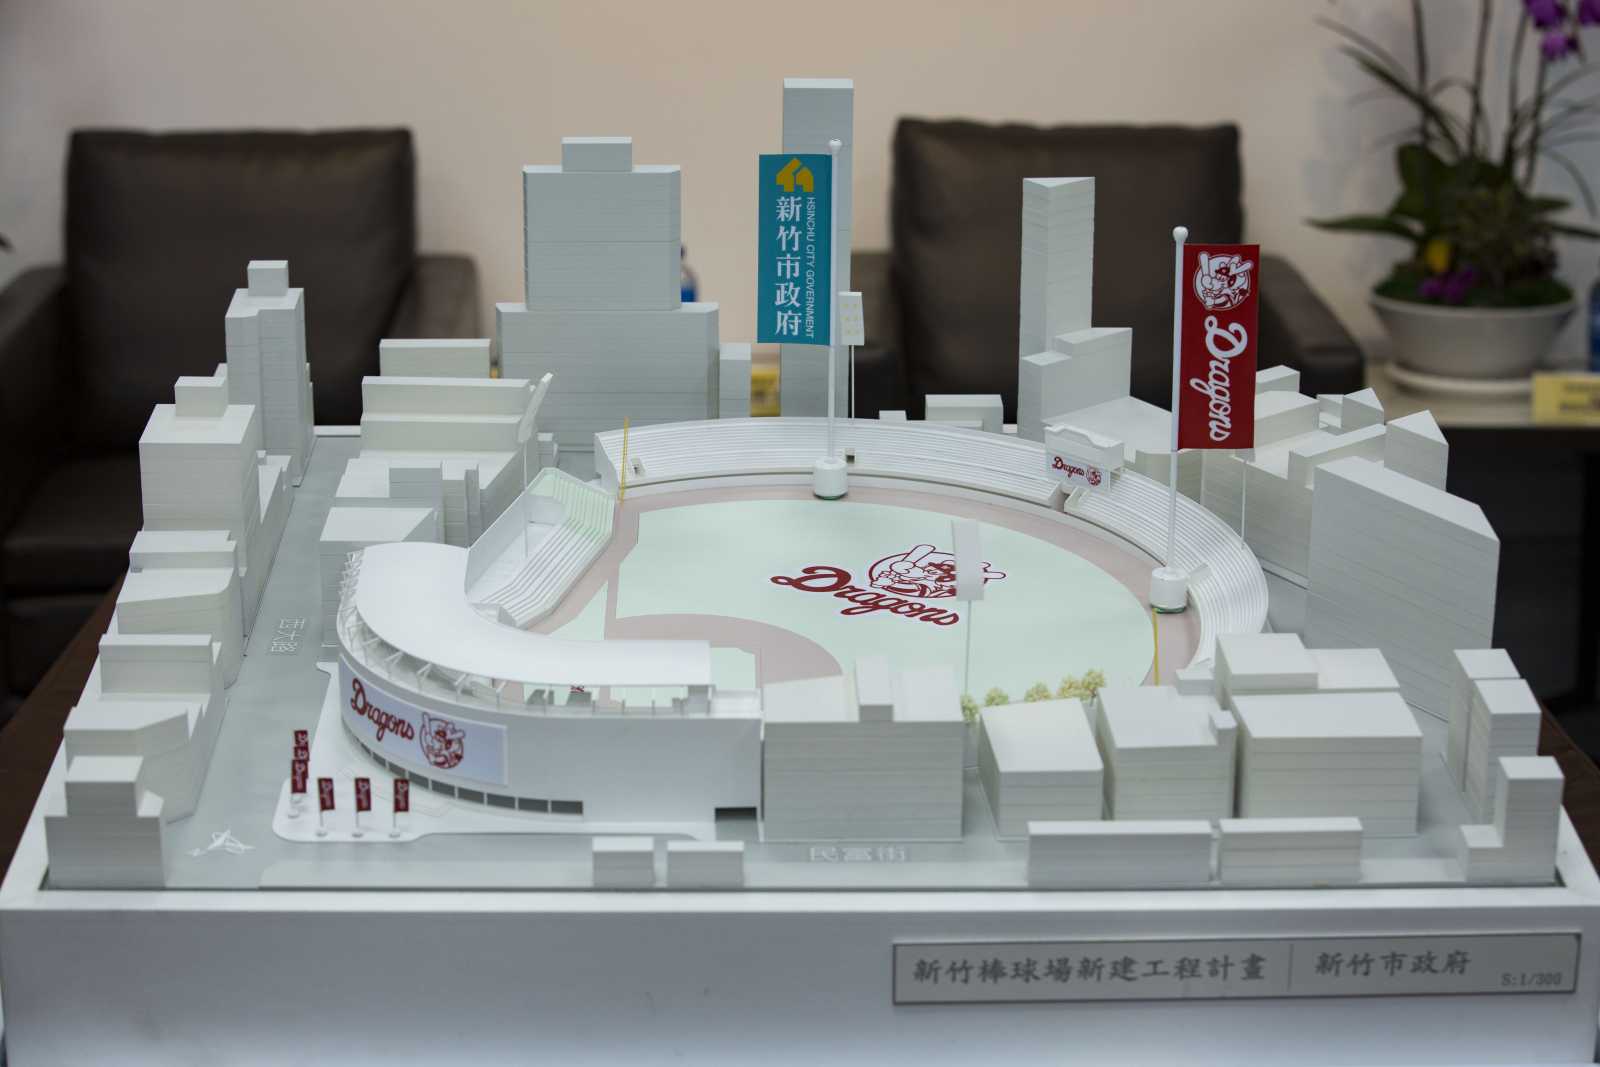 中華職棒球隊味全龍入主新竹市棒球場，預計導入5G、打造成智慧球場。圖片來源：新竹市政府